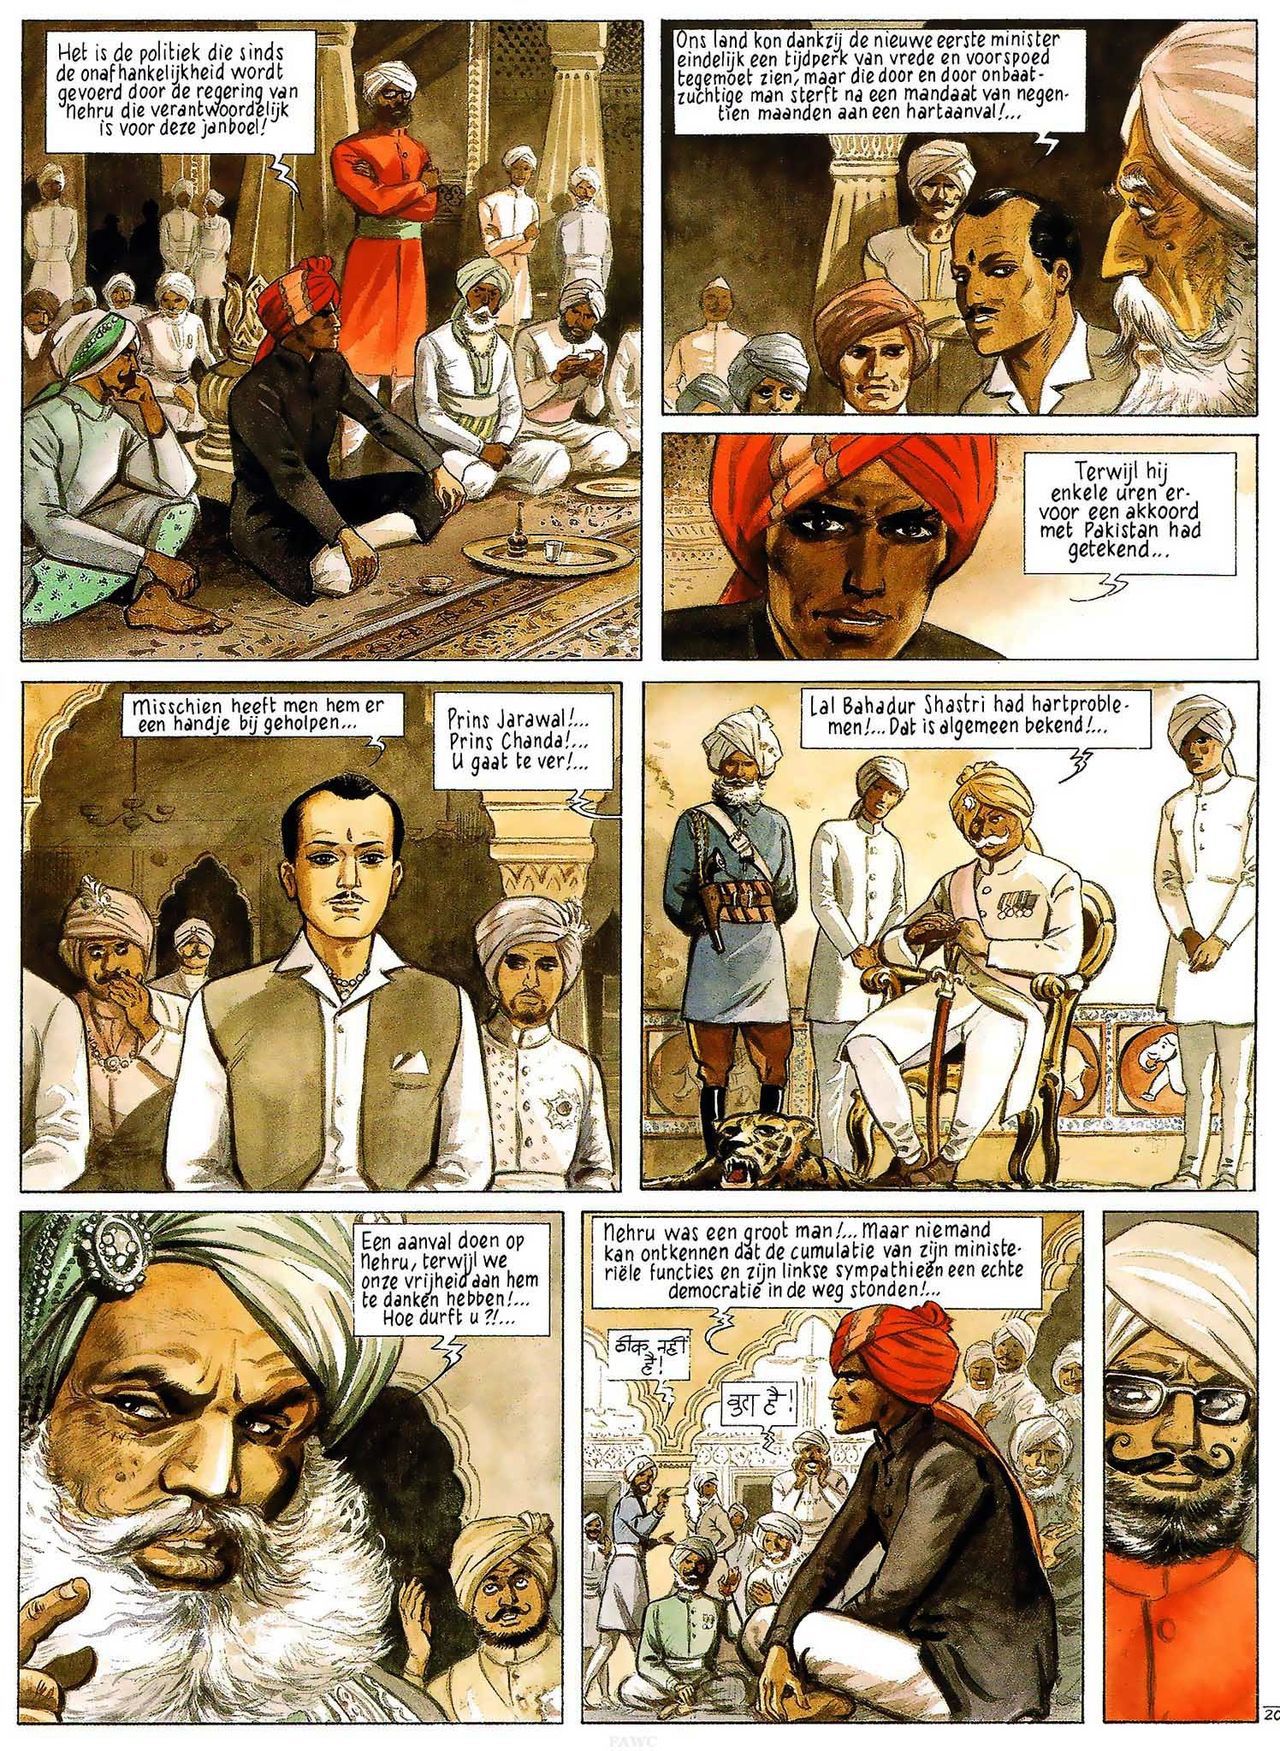 India Dreams - 03 - In De Schaduw Van De Bougainvilles (Dutch) Engelstalige en Duitse strips die op deze site staan, hier is de Nederlandse uitgave! 22